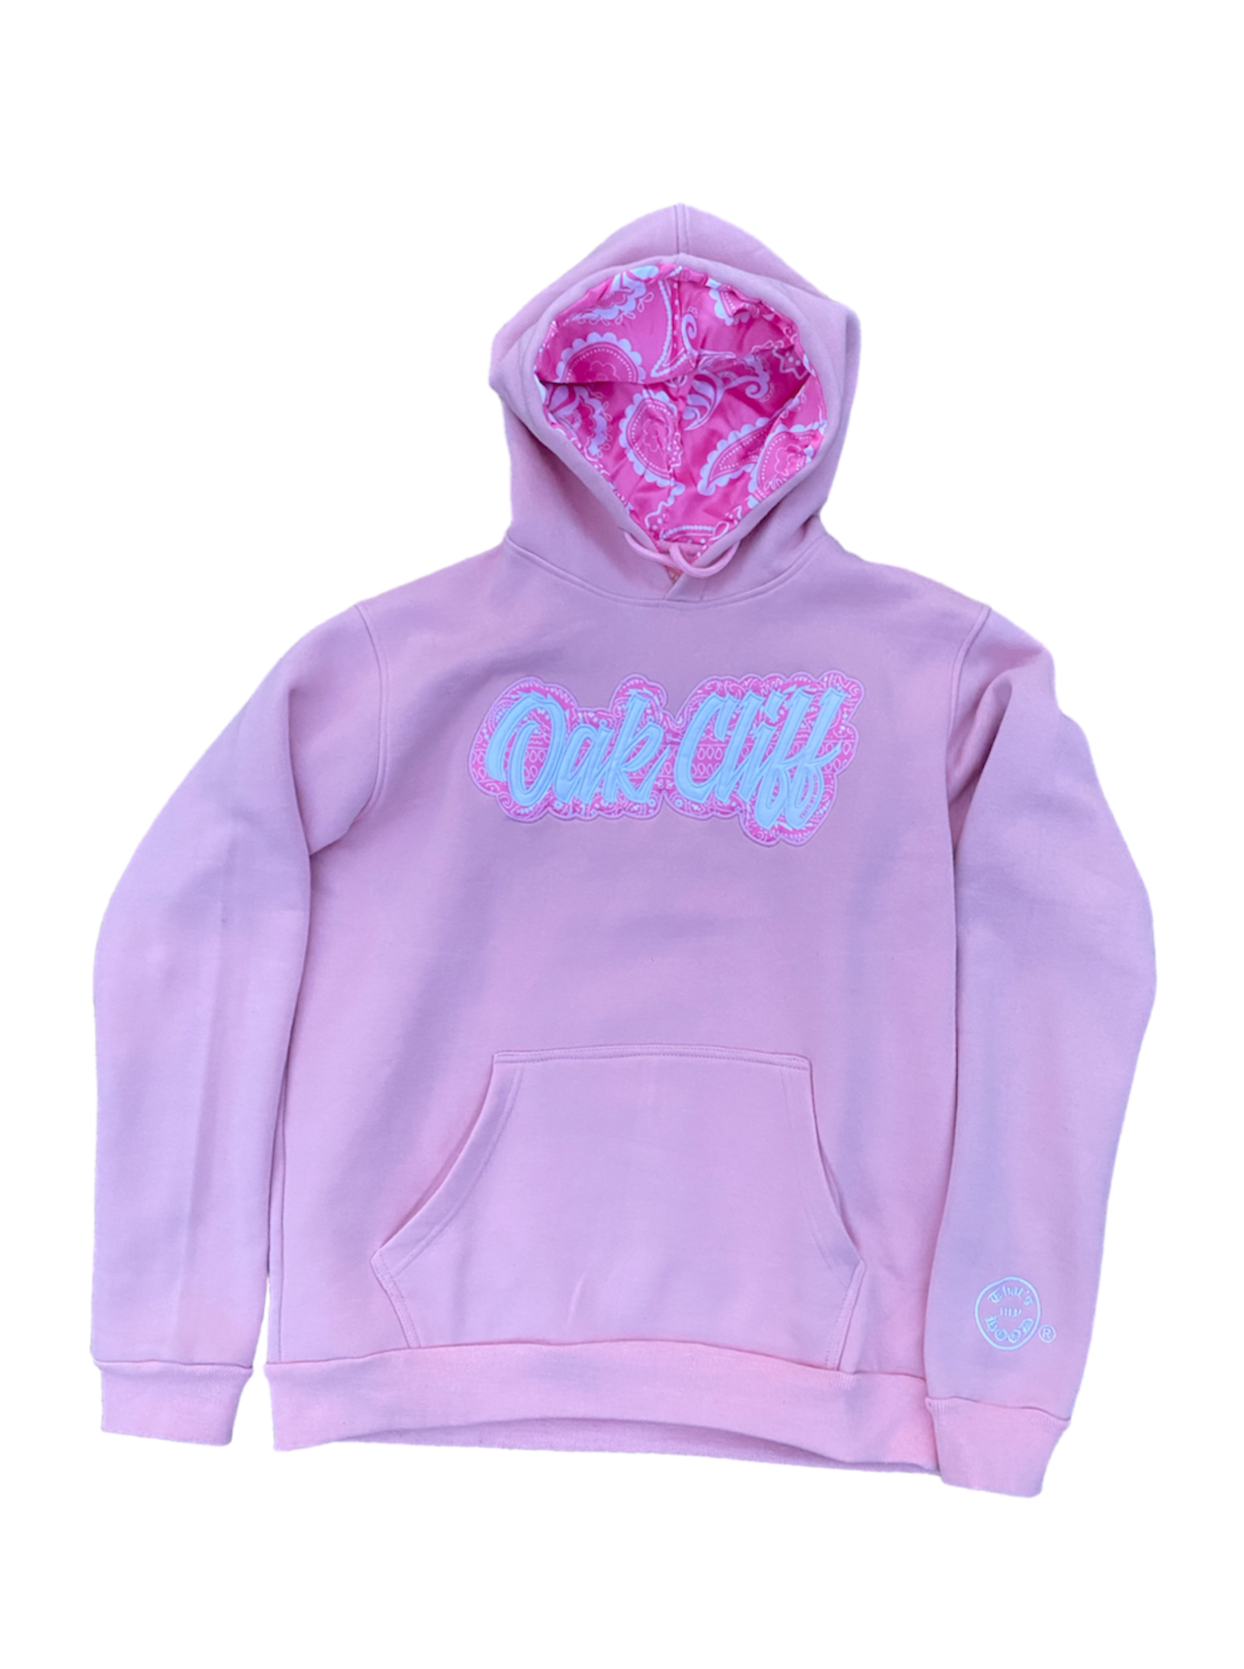 Oak Cliff Pink Paisley Hoodie